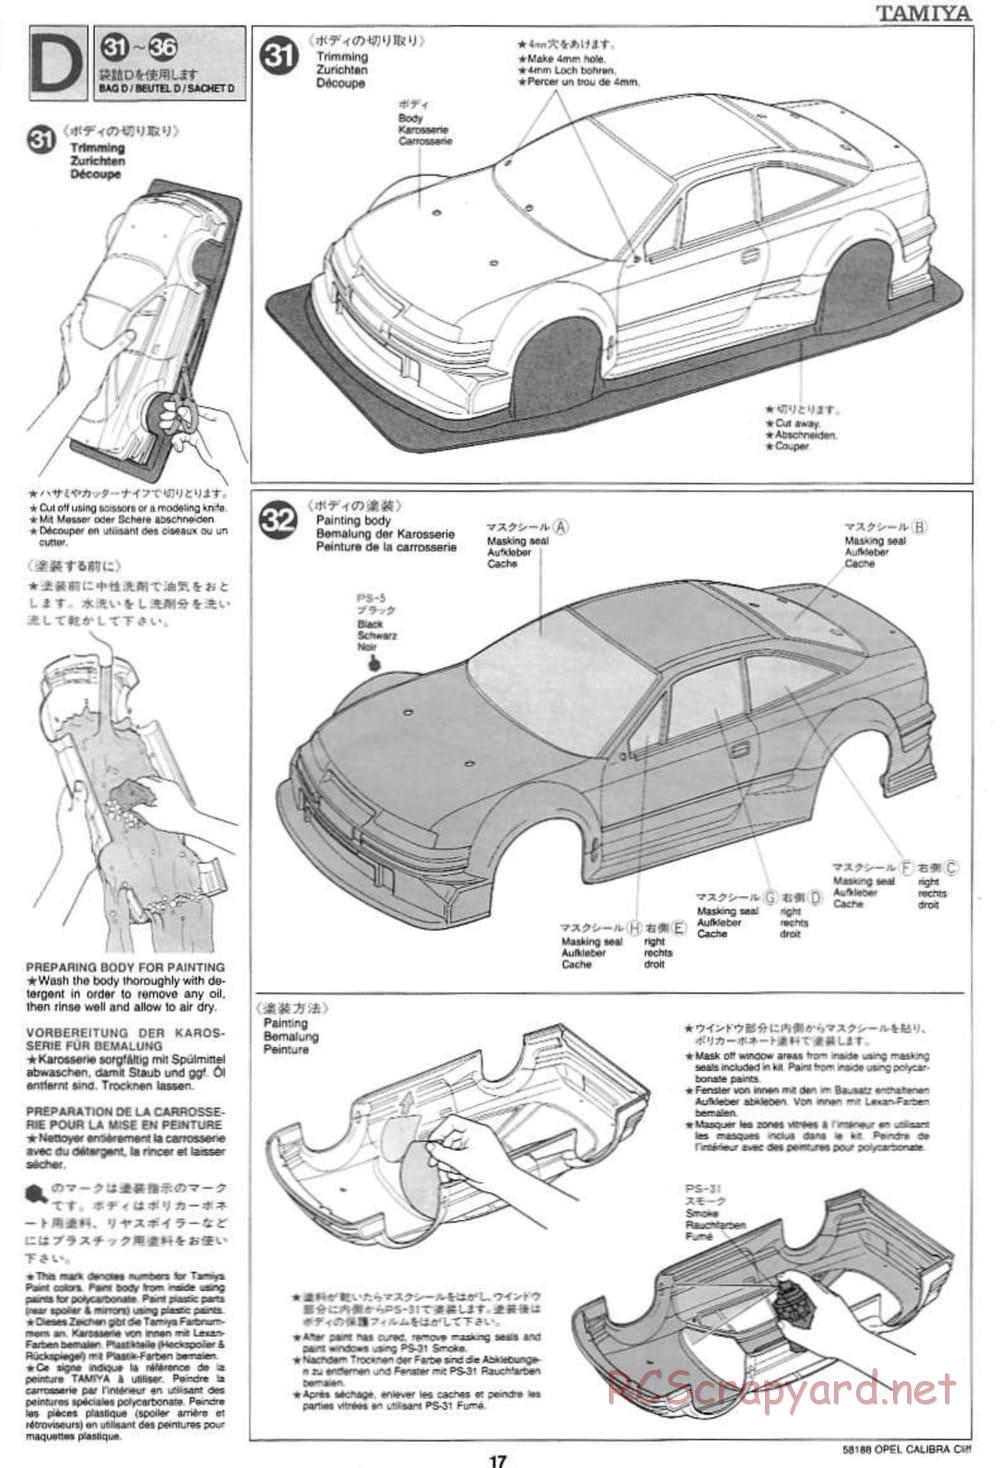 Tamiya - Opel Calibra Cliff - TA-03F Chassis - Manual - Page 17